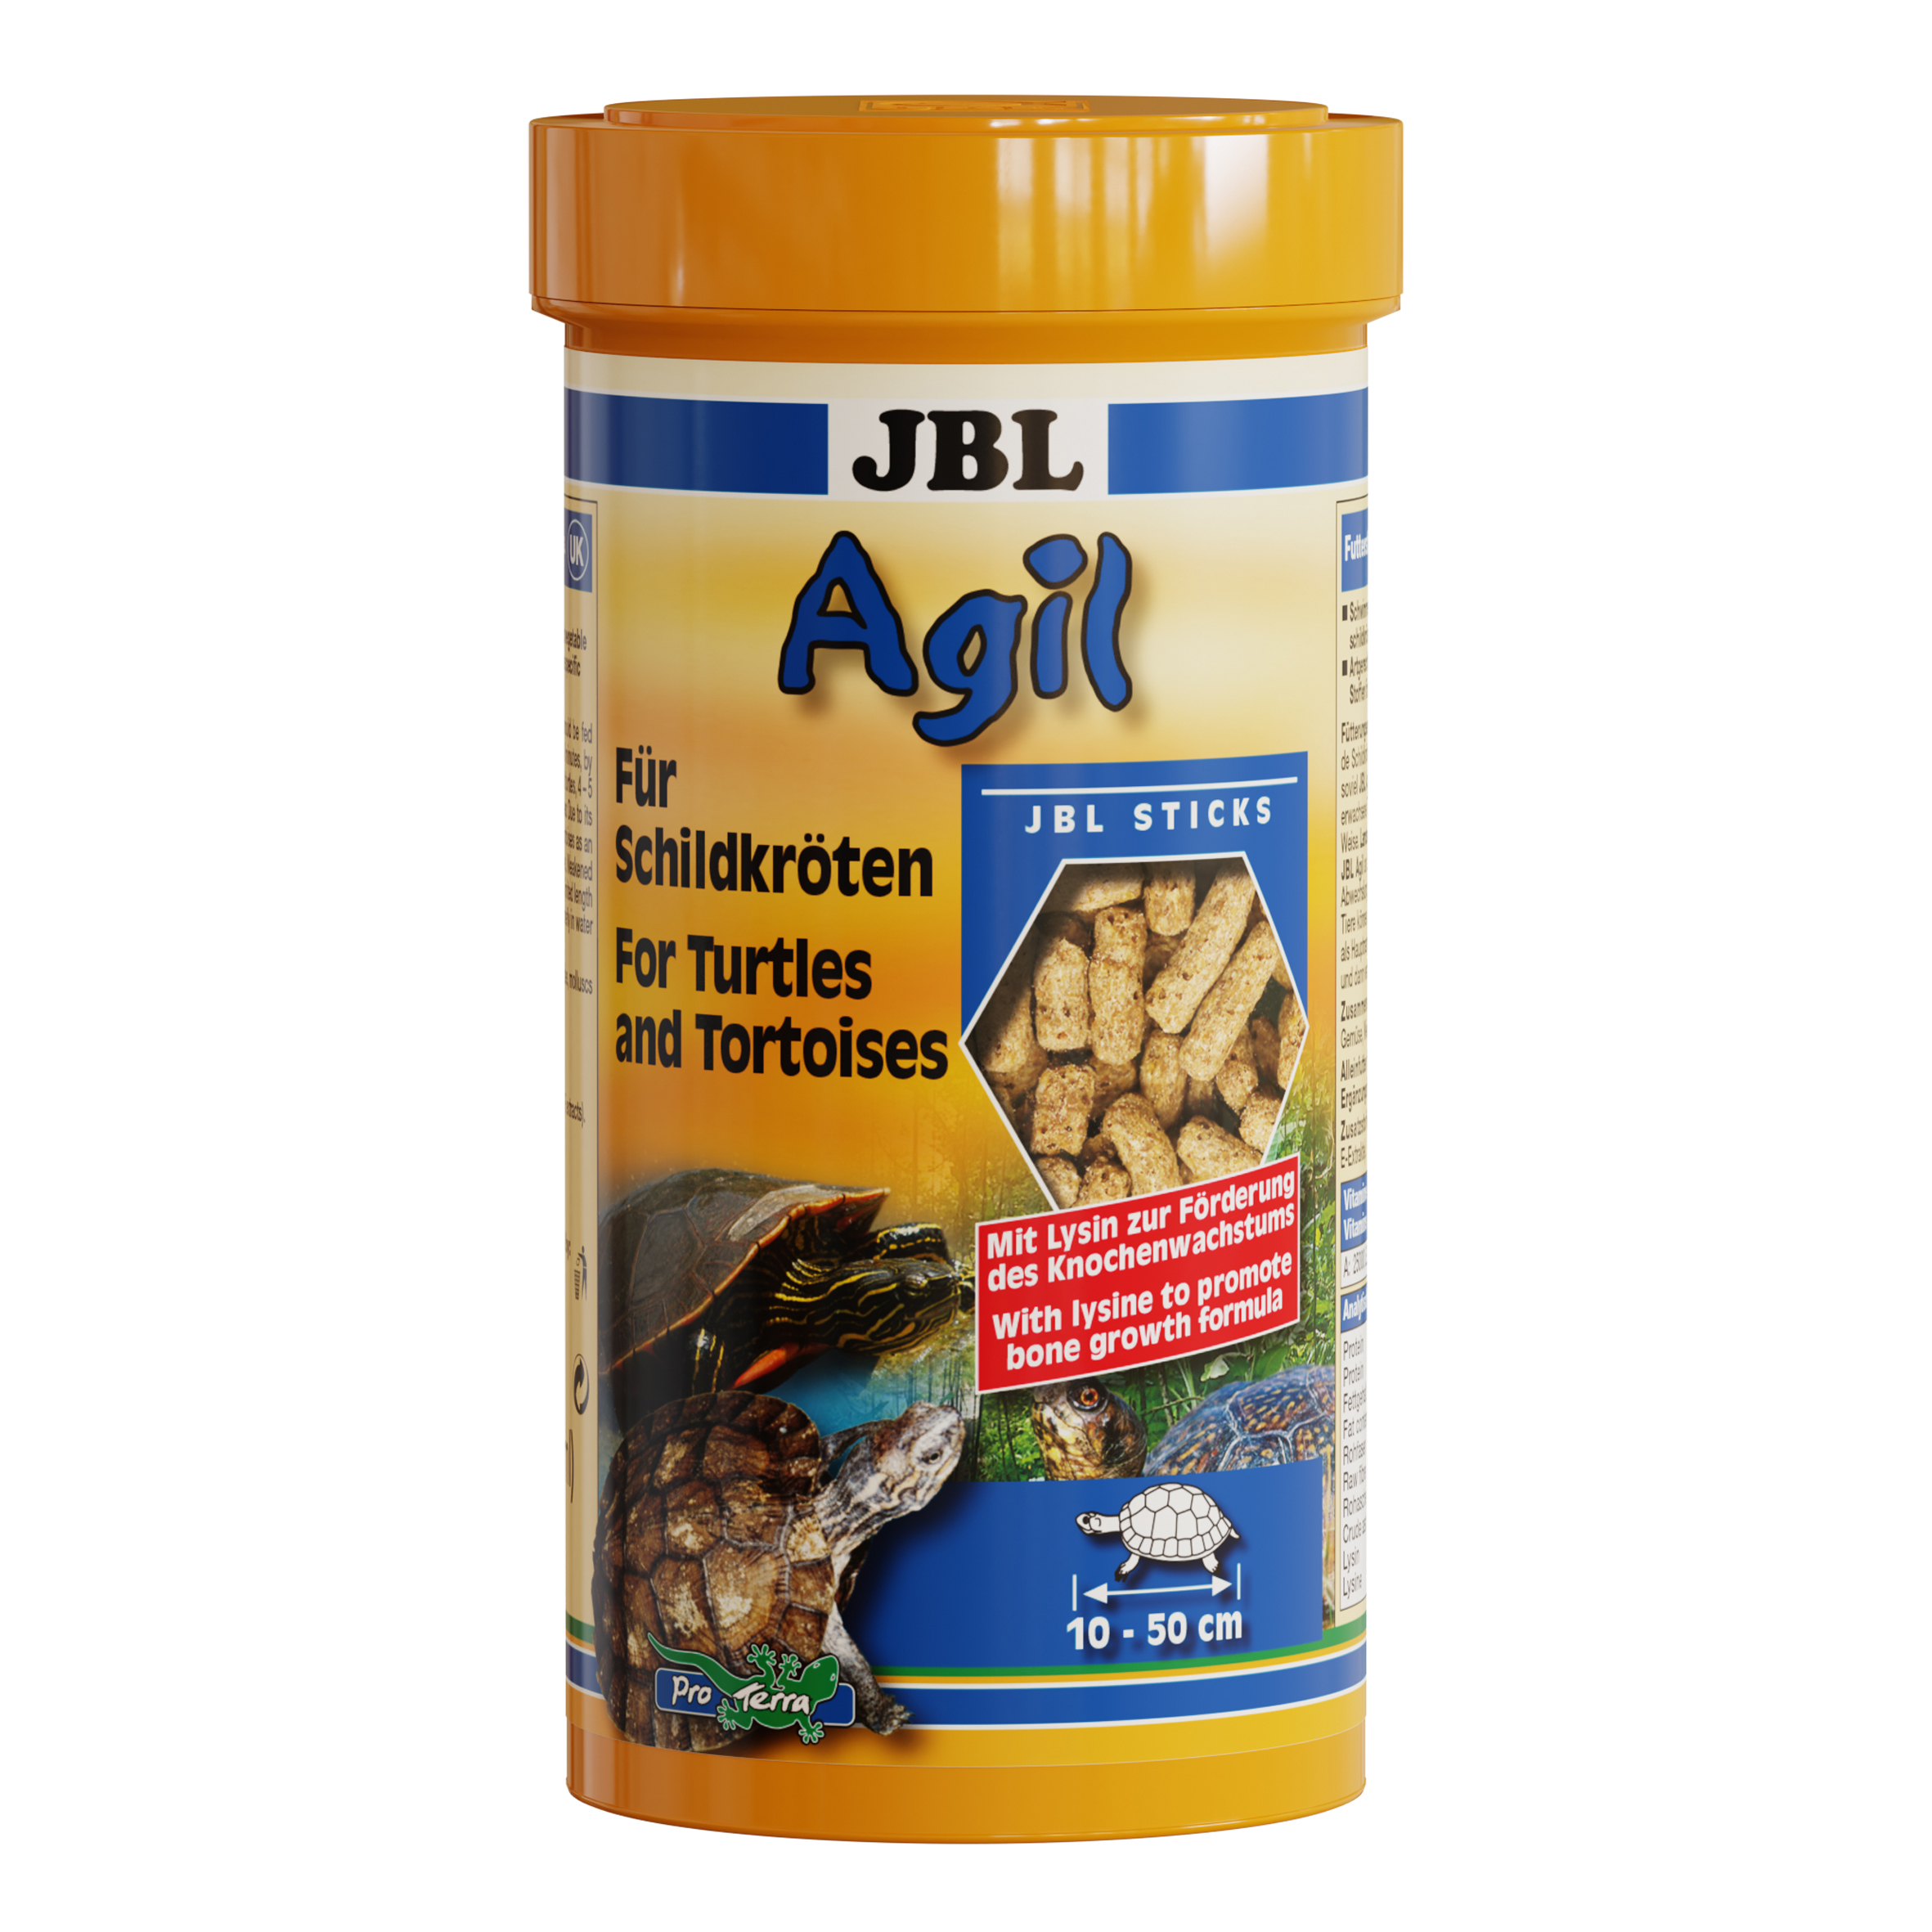 JBL GMBH & CO. KG - NEUHOFEN Agil 250ml JBL